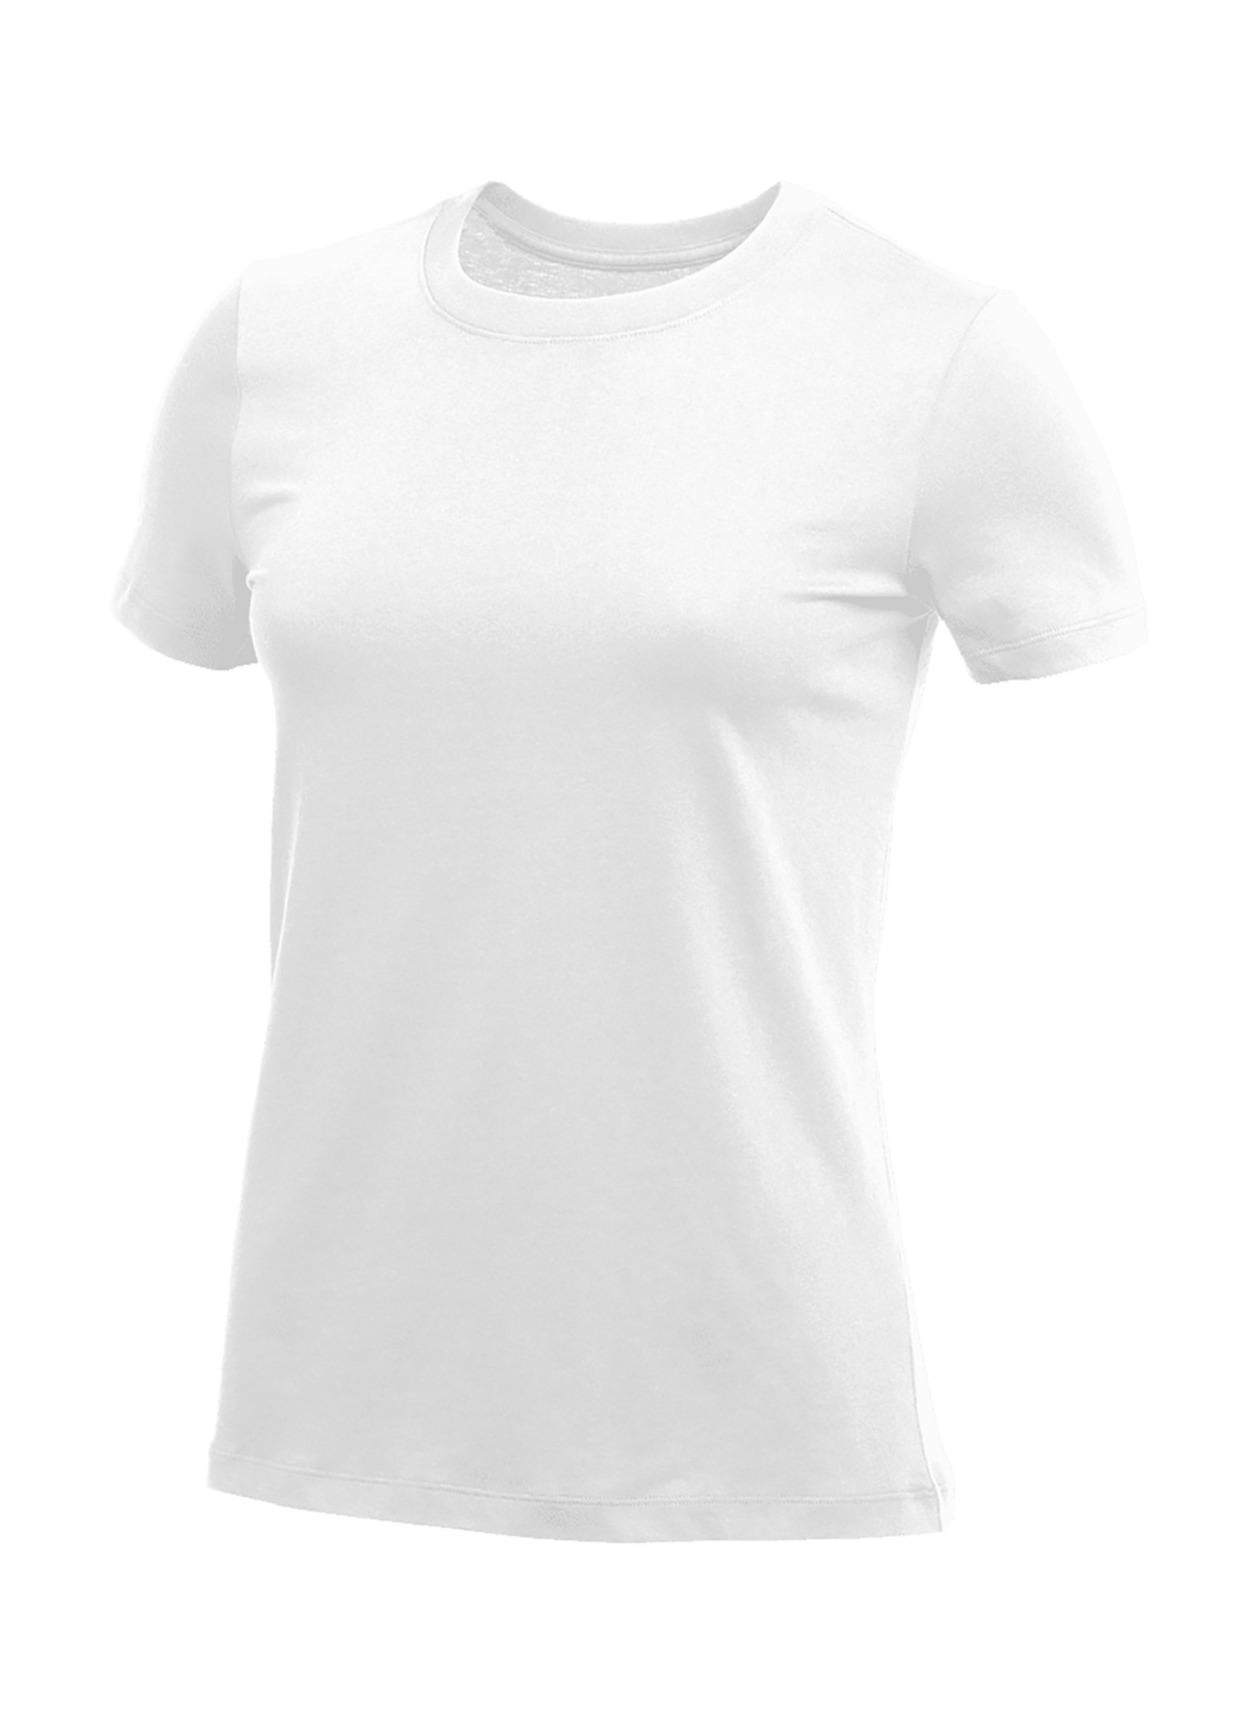 Nike Women's White T-Shirt